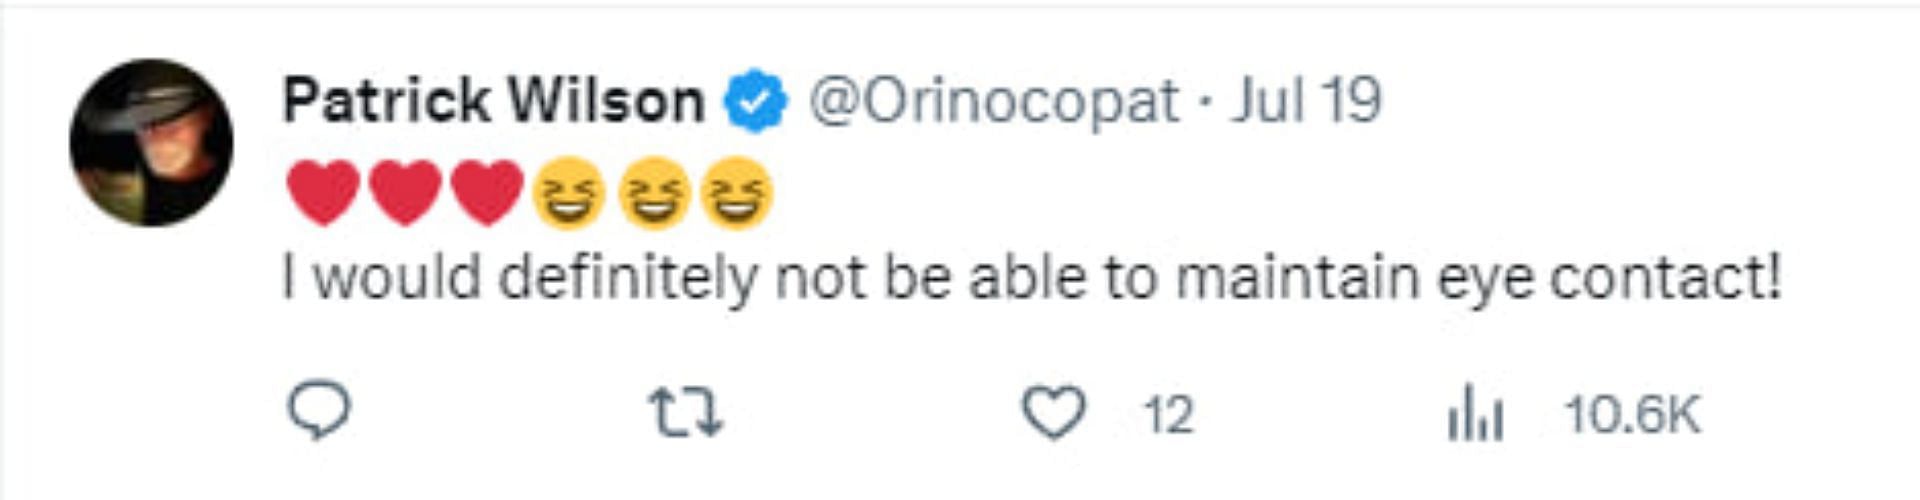 Twitter @Orinocopat